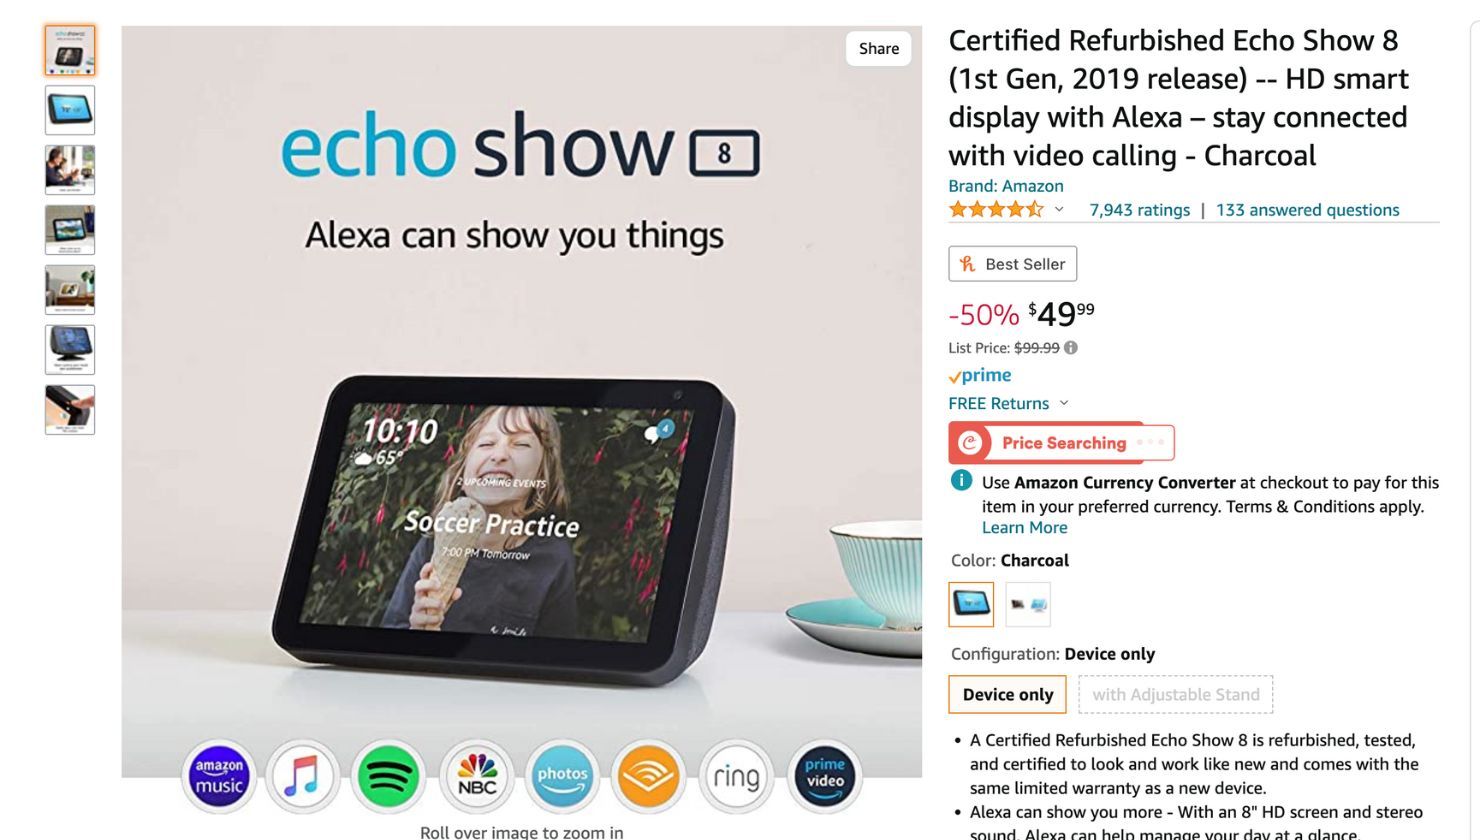 Refurbished Echo Show 8 on Amazon website